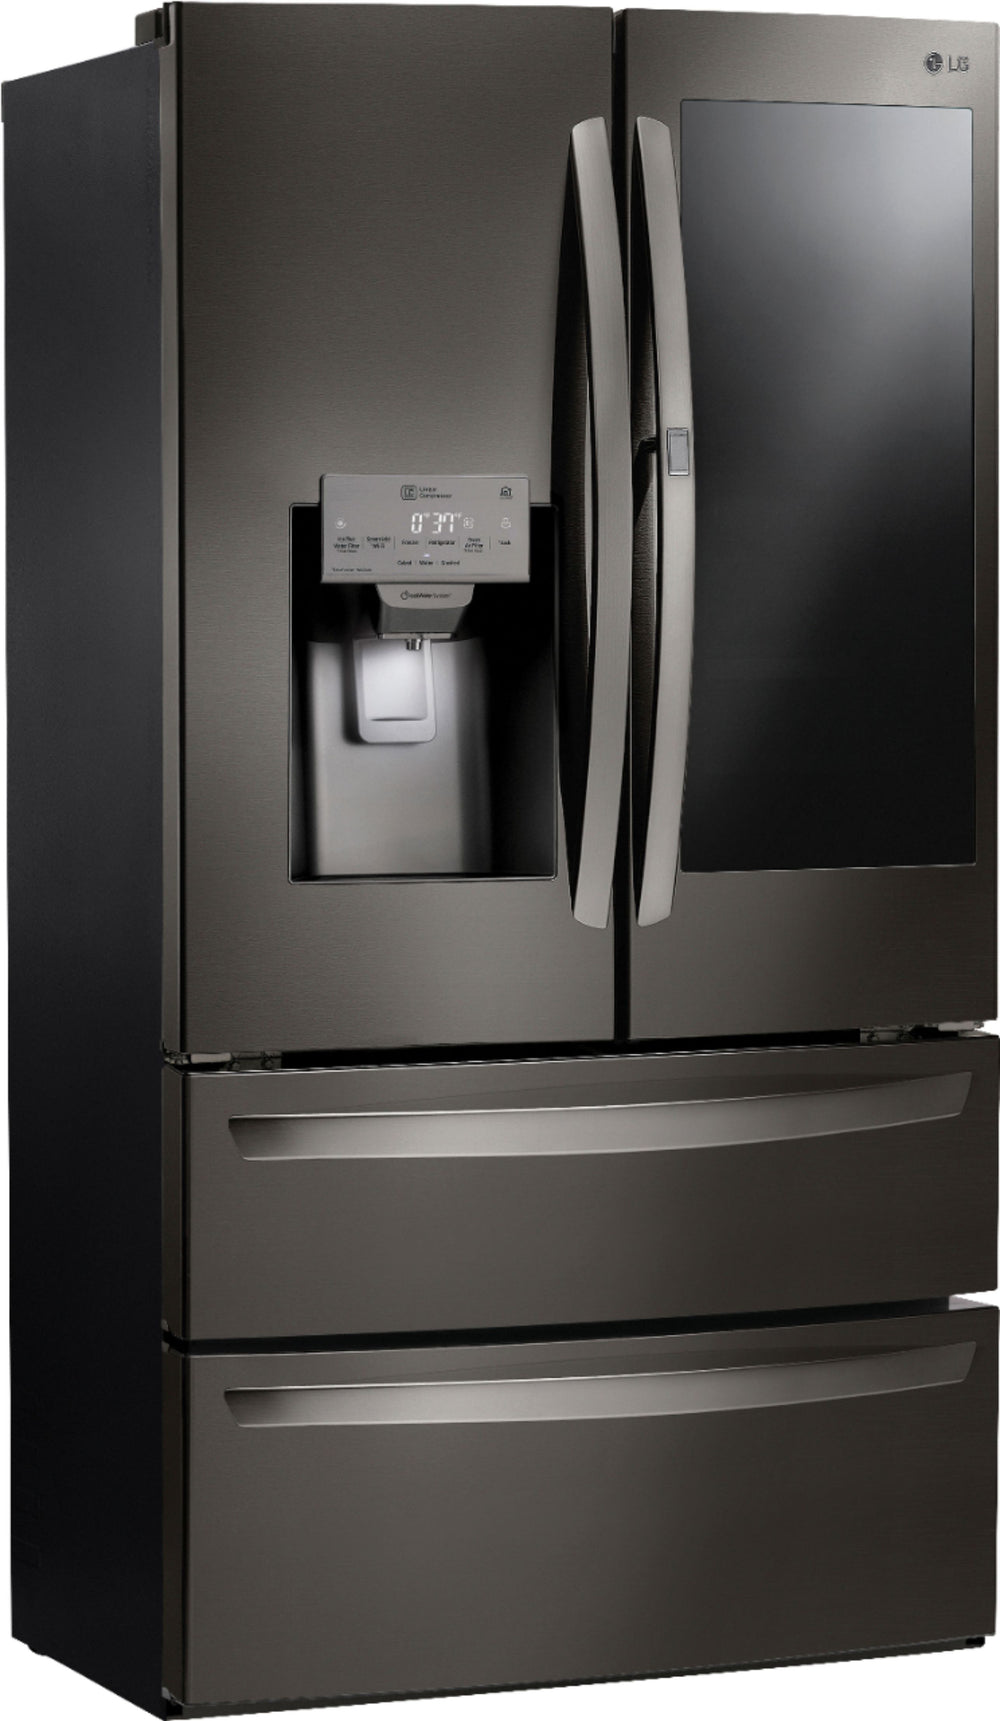 LG - 27.8 Cu. Ft. 4-Door French Door Smart Refrigerator with InstaView - Black stainless steel_1